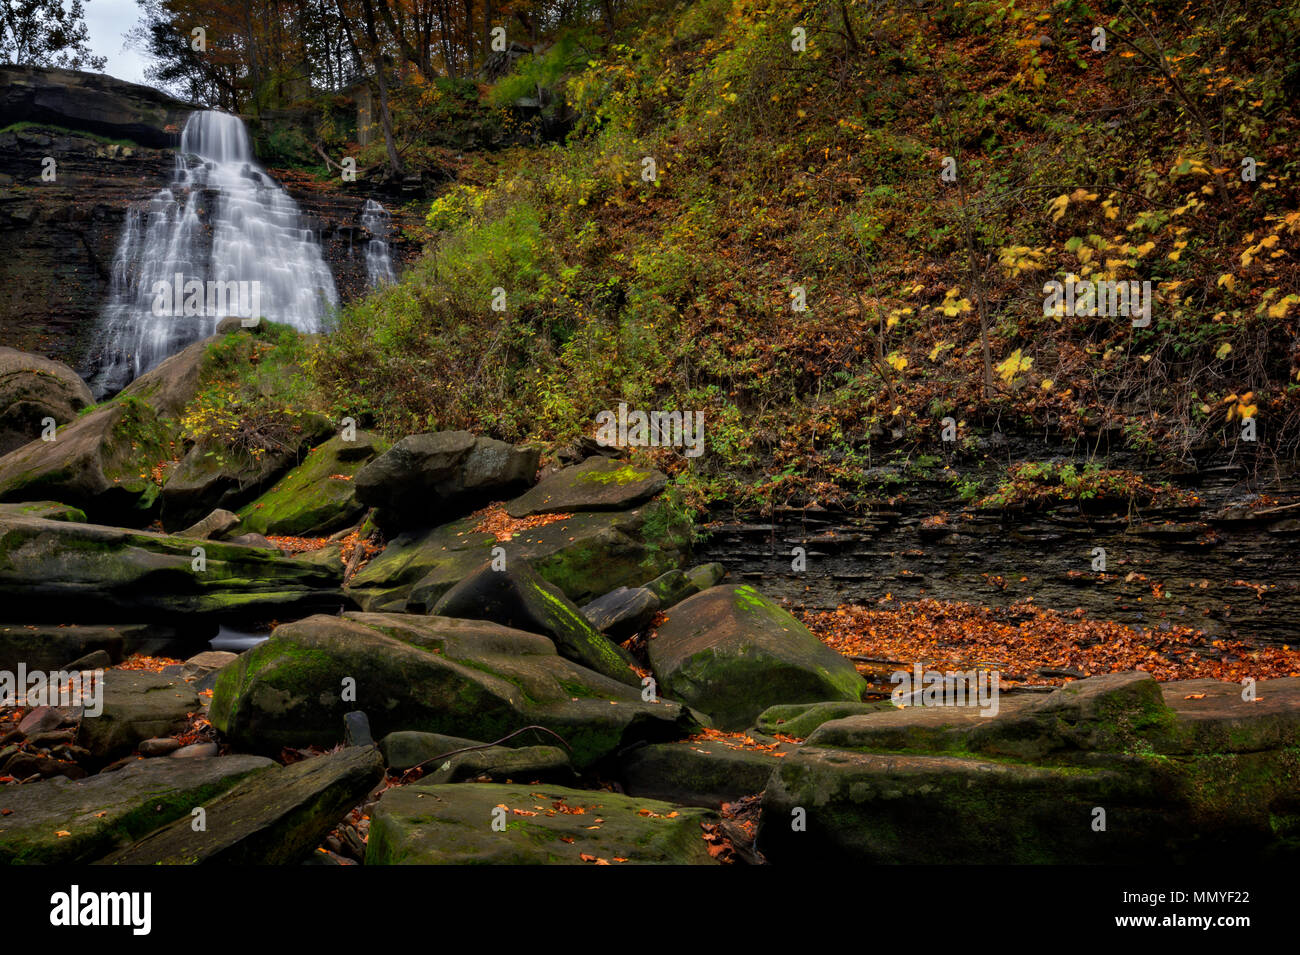 En chutes Brandywine Parc national de Cuyahoga Valley dans l'Ohio. Une belle chute de 65 pieds. Vu ici à l'automne avec des feuilles mortes et d'énormes rochers. Banque D'Images